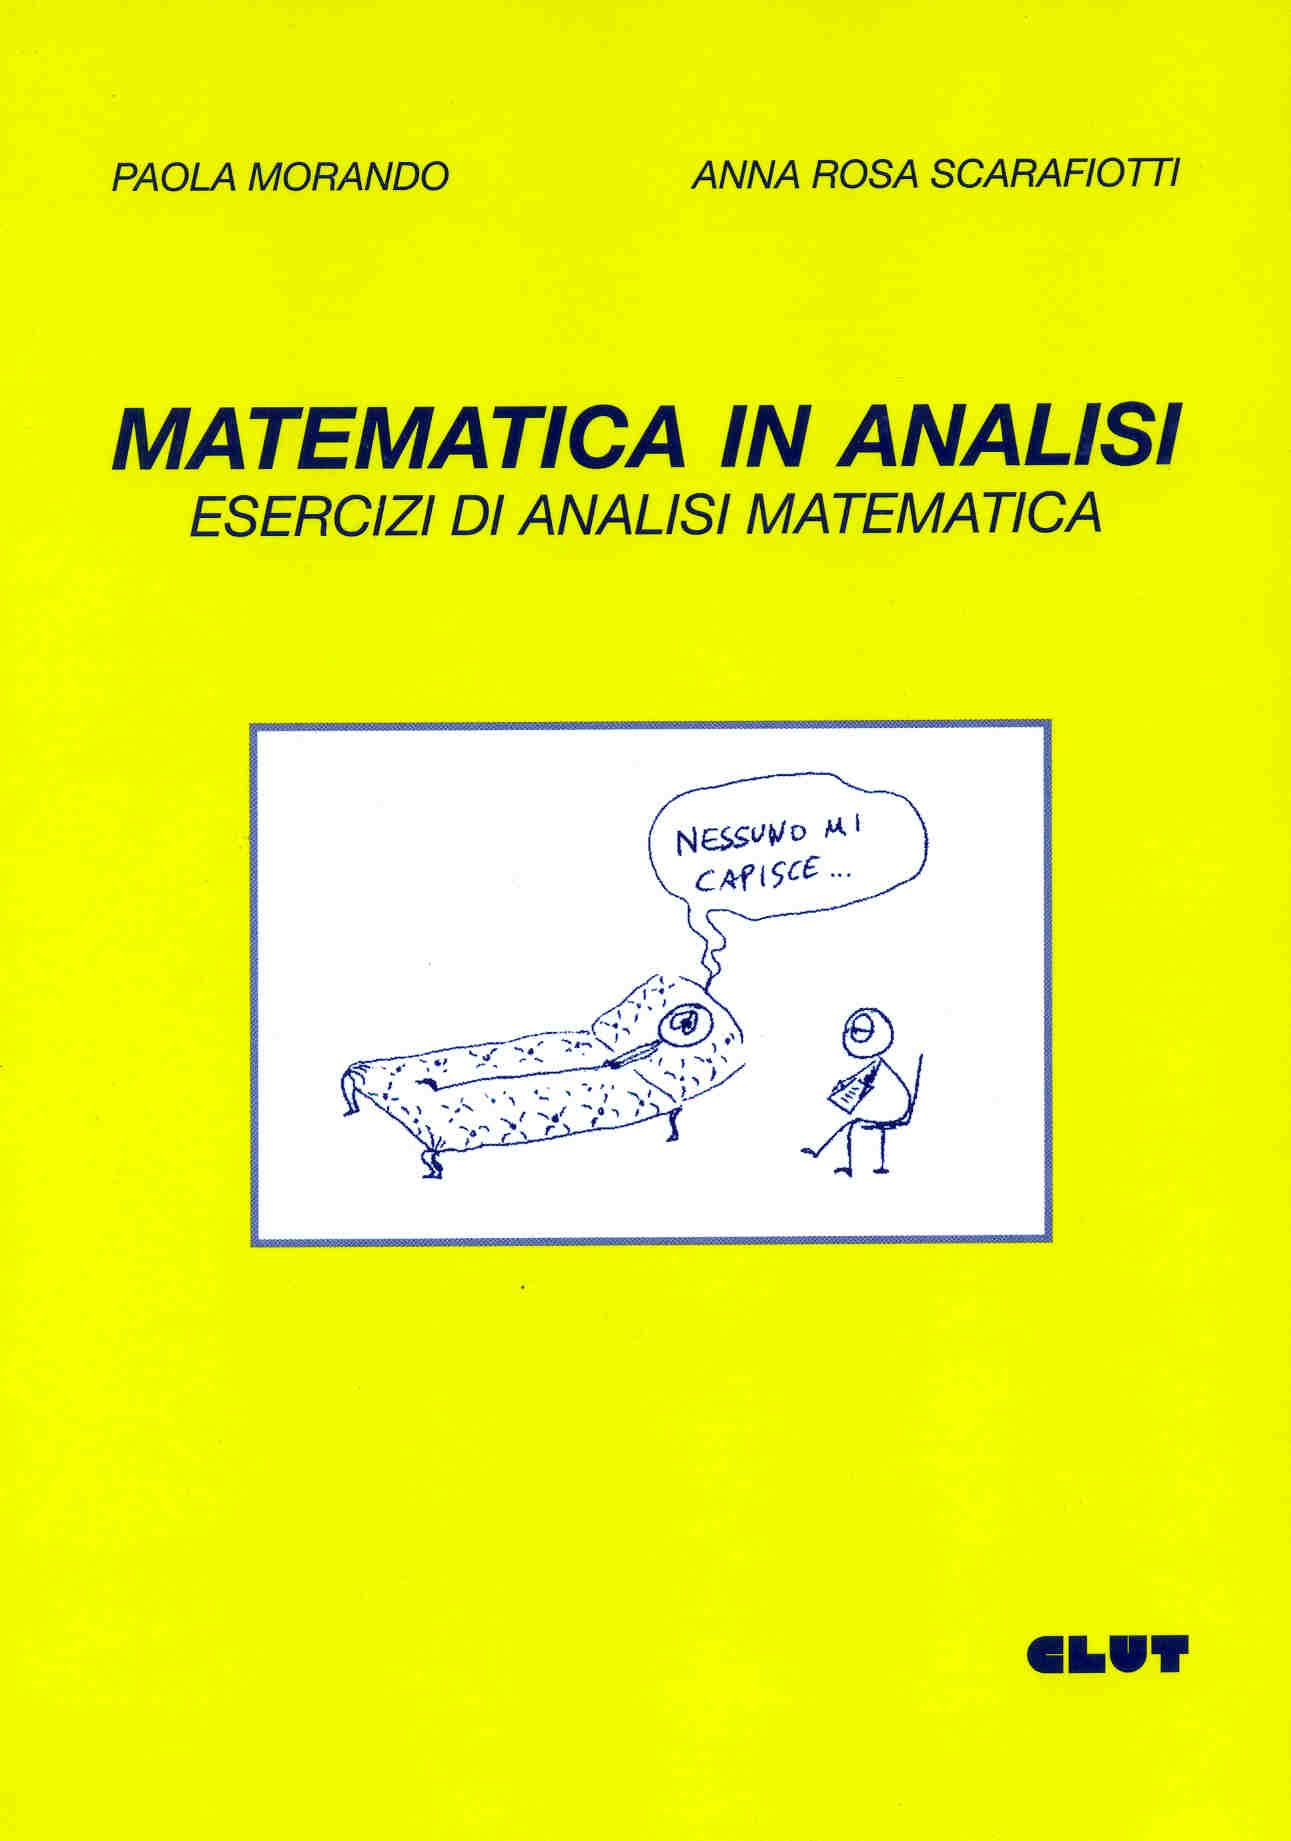 MATEMATICA IN ANALISI - Esercizi di analisi matematica